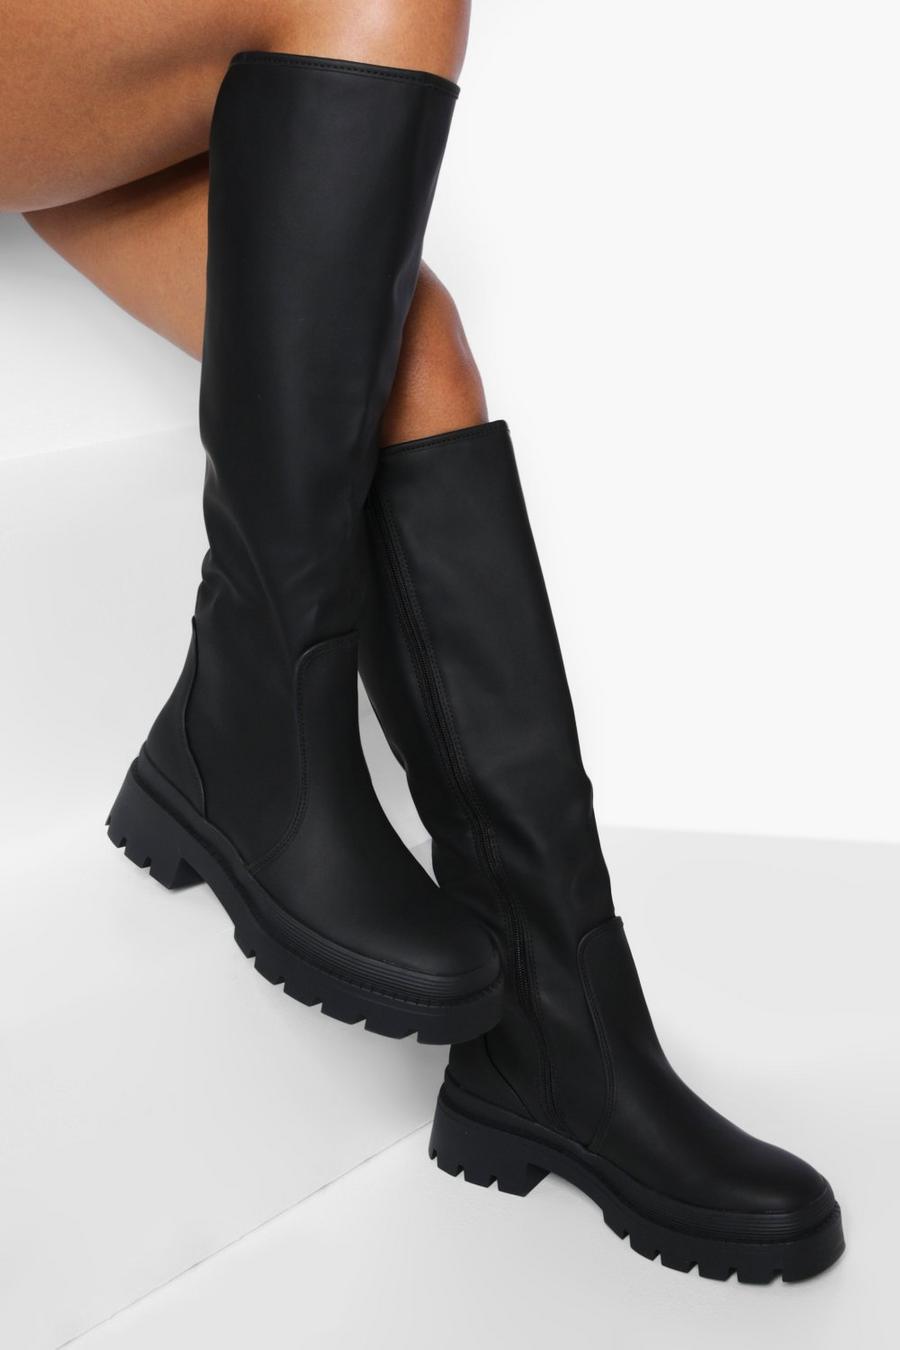 Black noir Rubber Knee High Boots